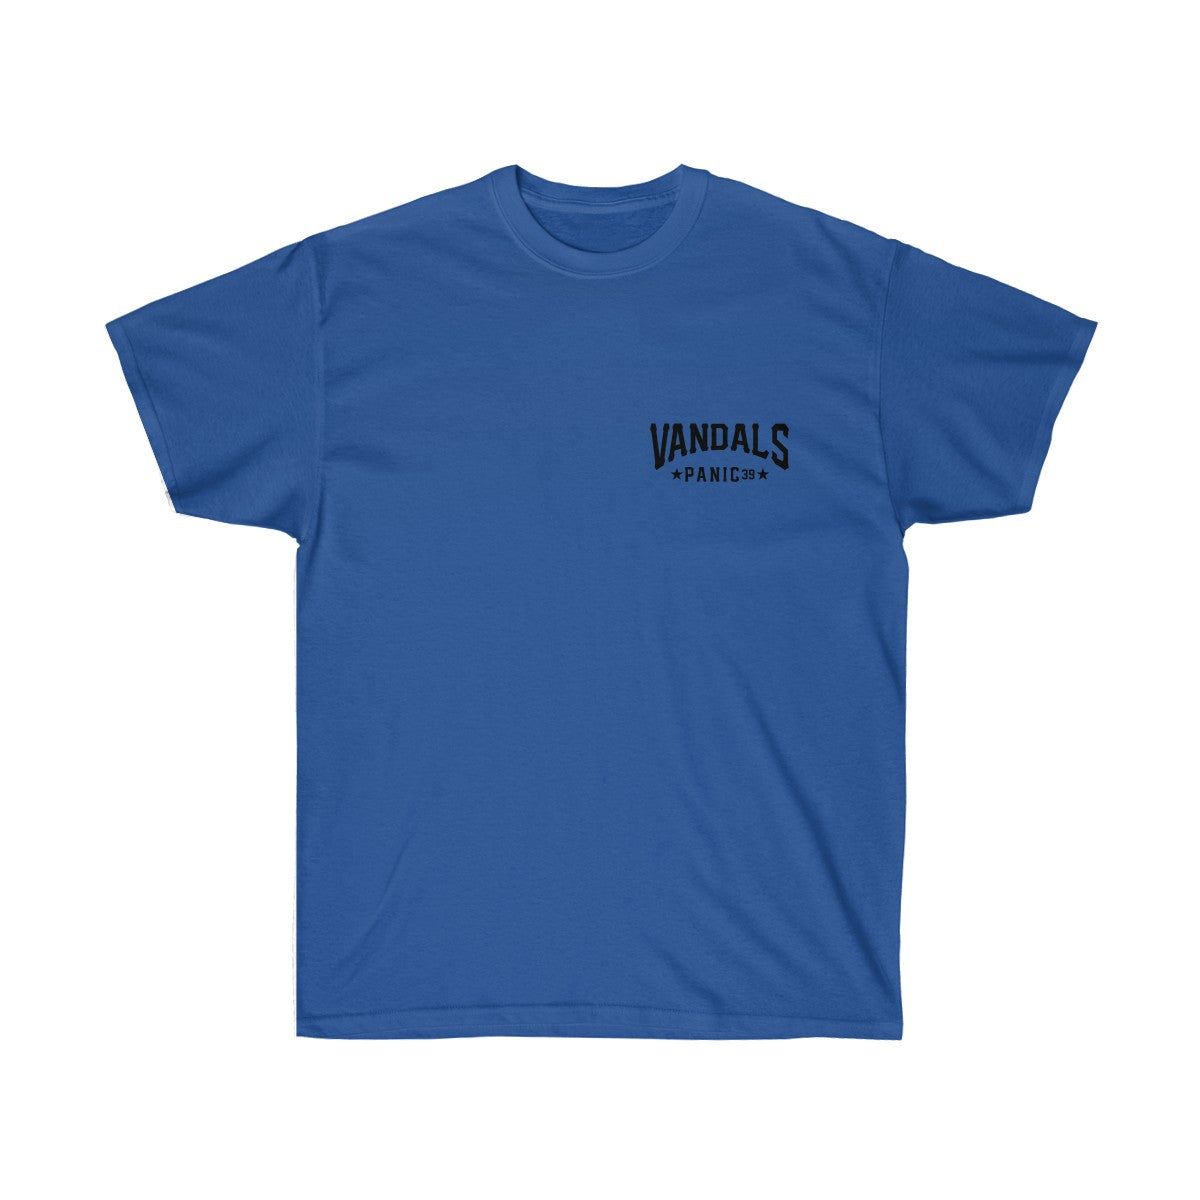 Panic 39 Mens Vandals T-Shirt - Black Print - bboy t-shirt